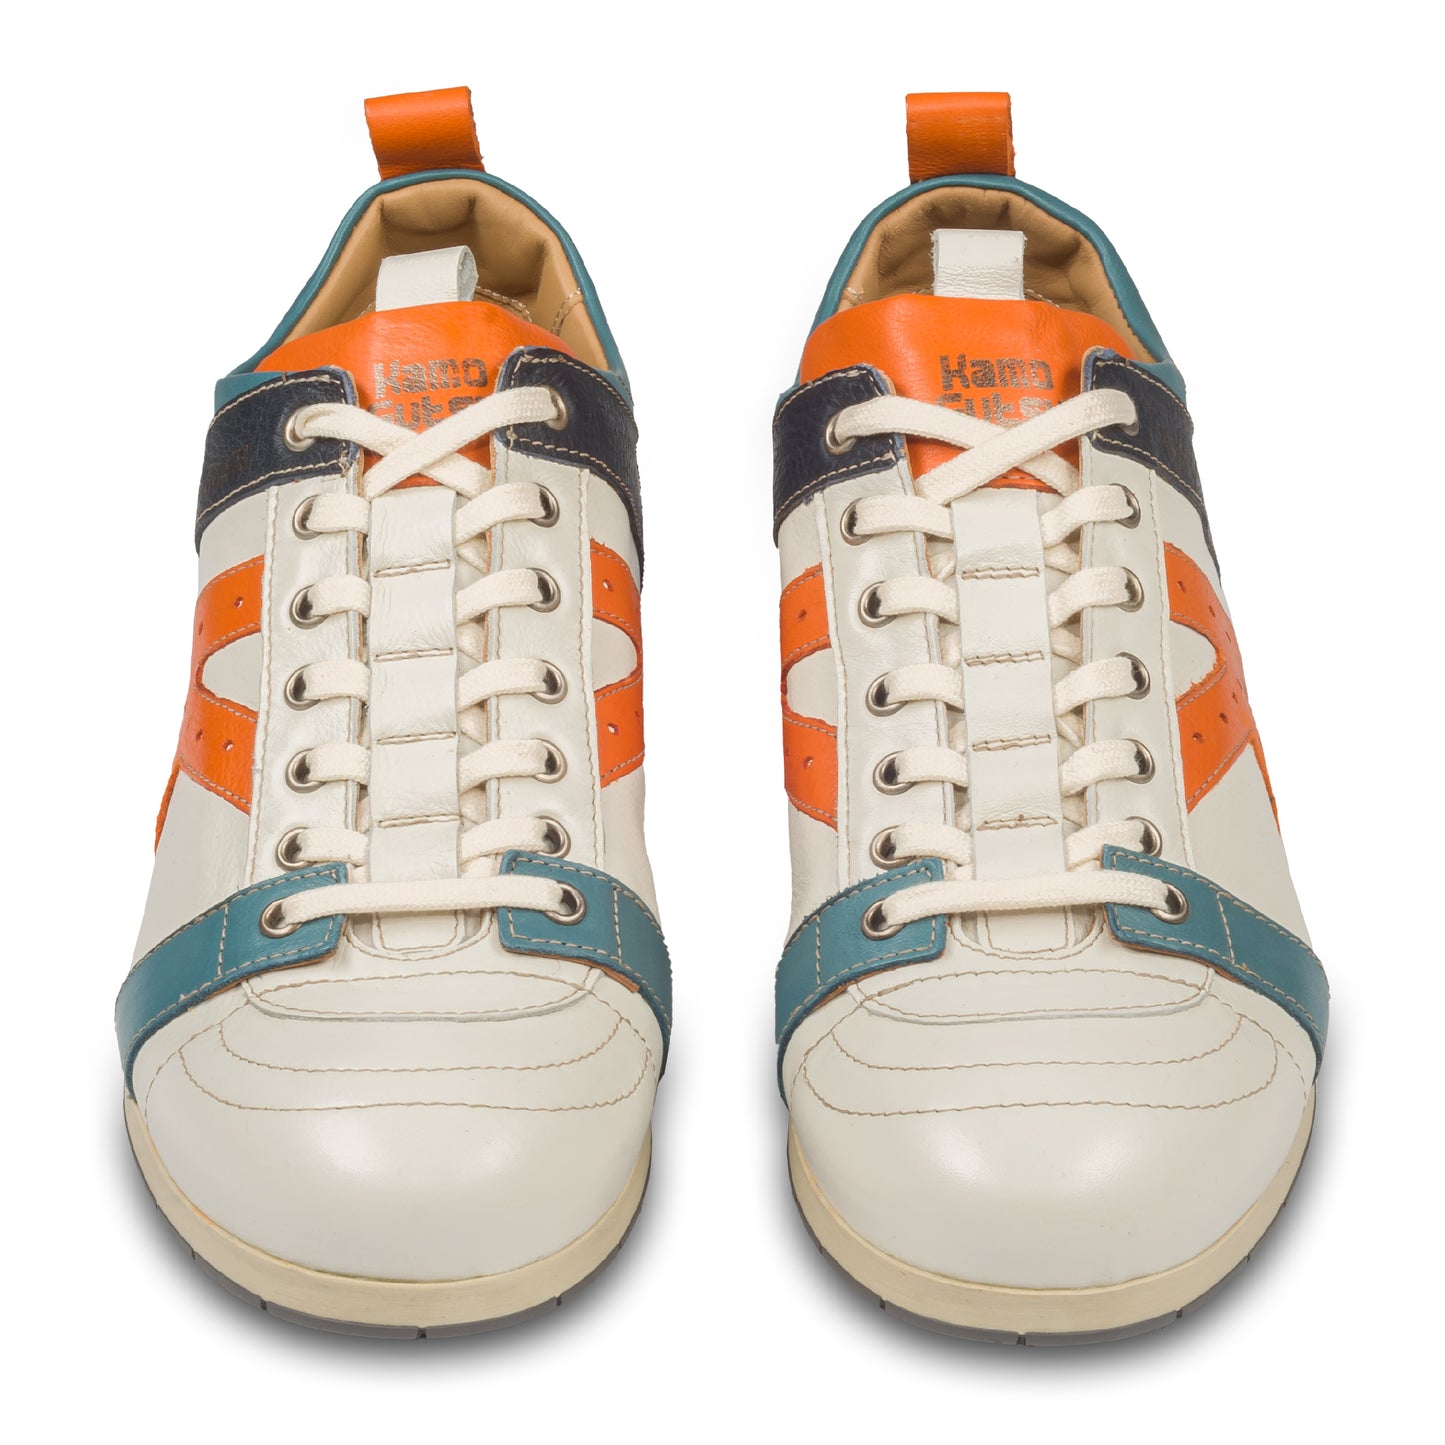 KAMO-GUTSU Herren Leder Sneaker, weiß mit orange und blau, Modell TIFO-042 gel ice arancio. Handgefertigt. Paarweise Ansicht von vorne.